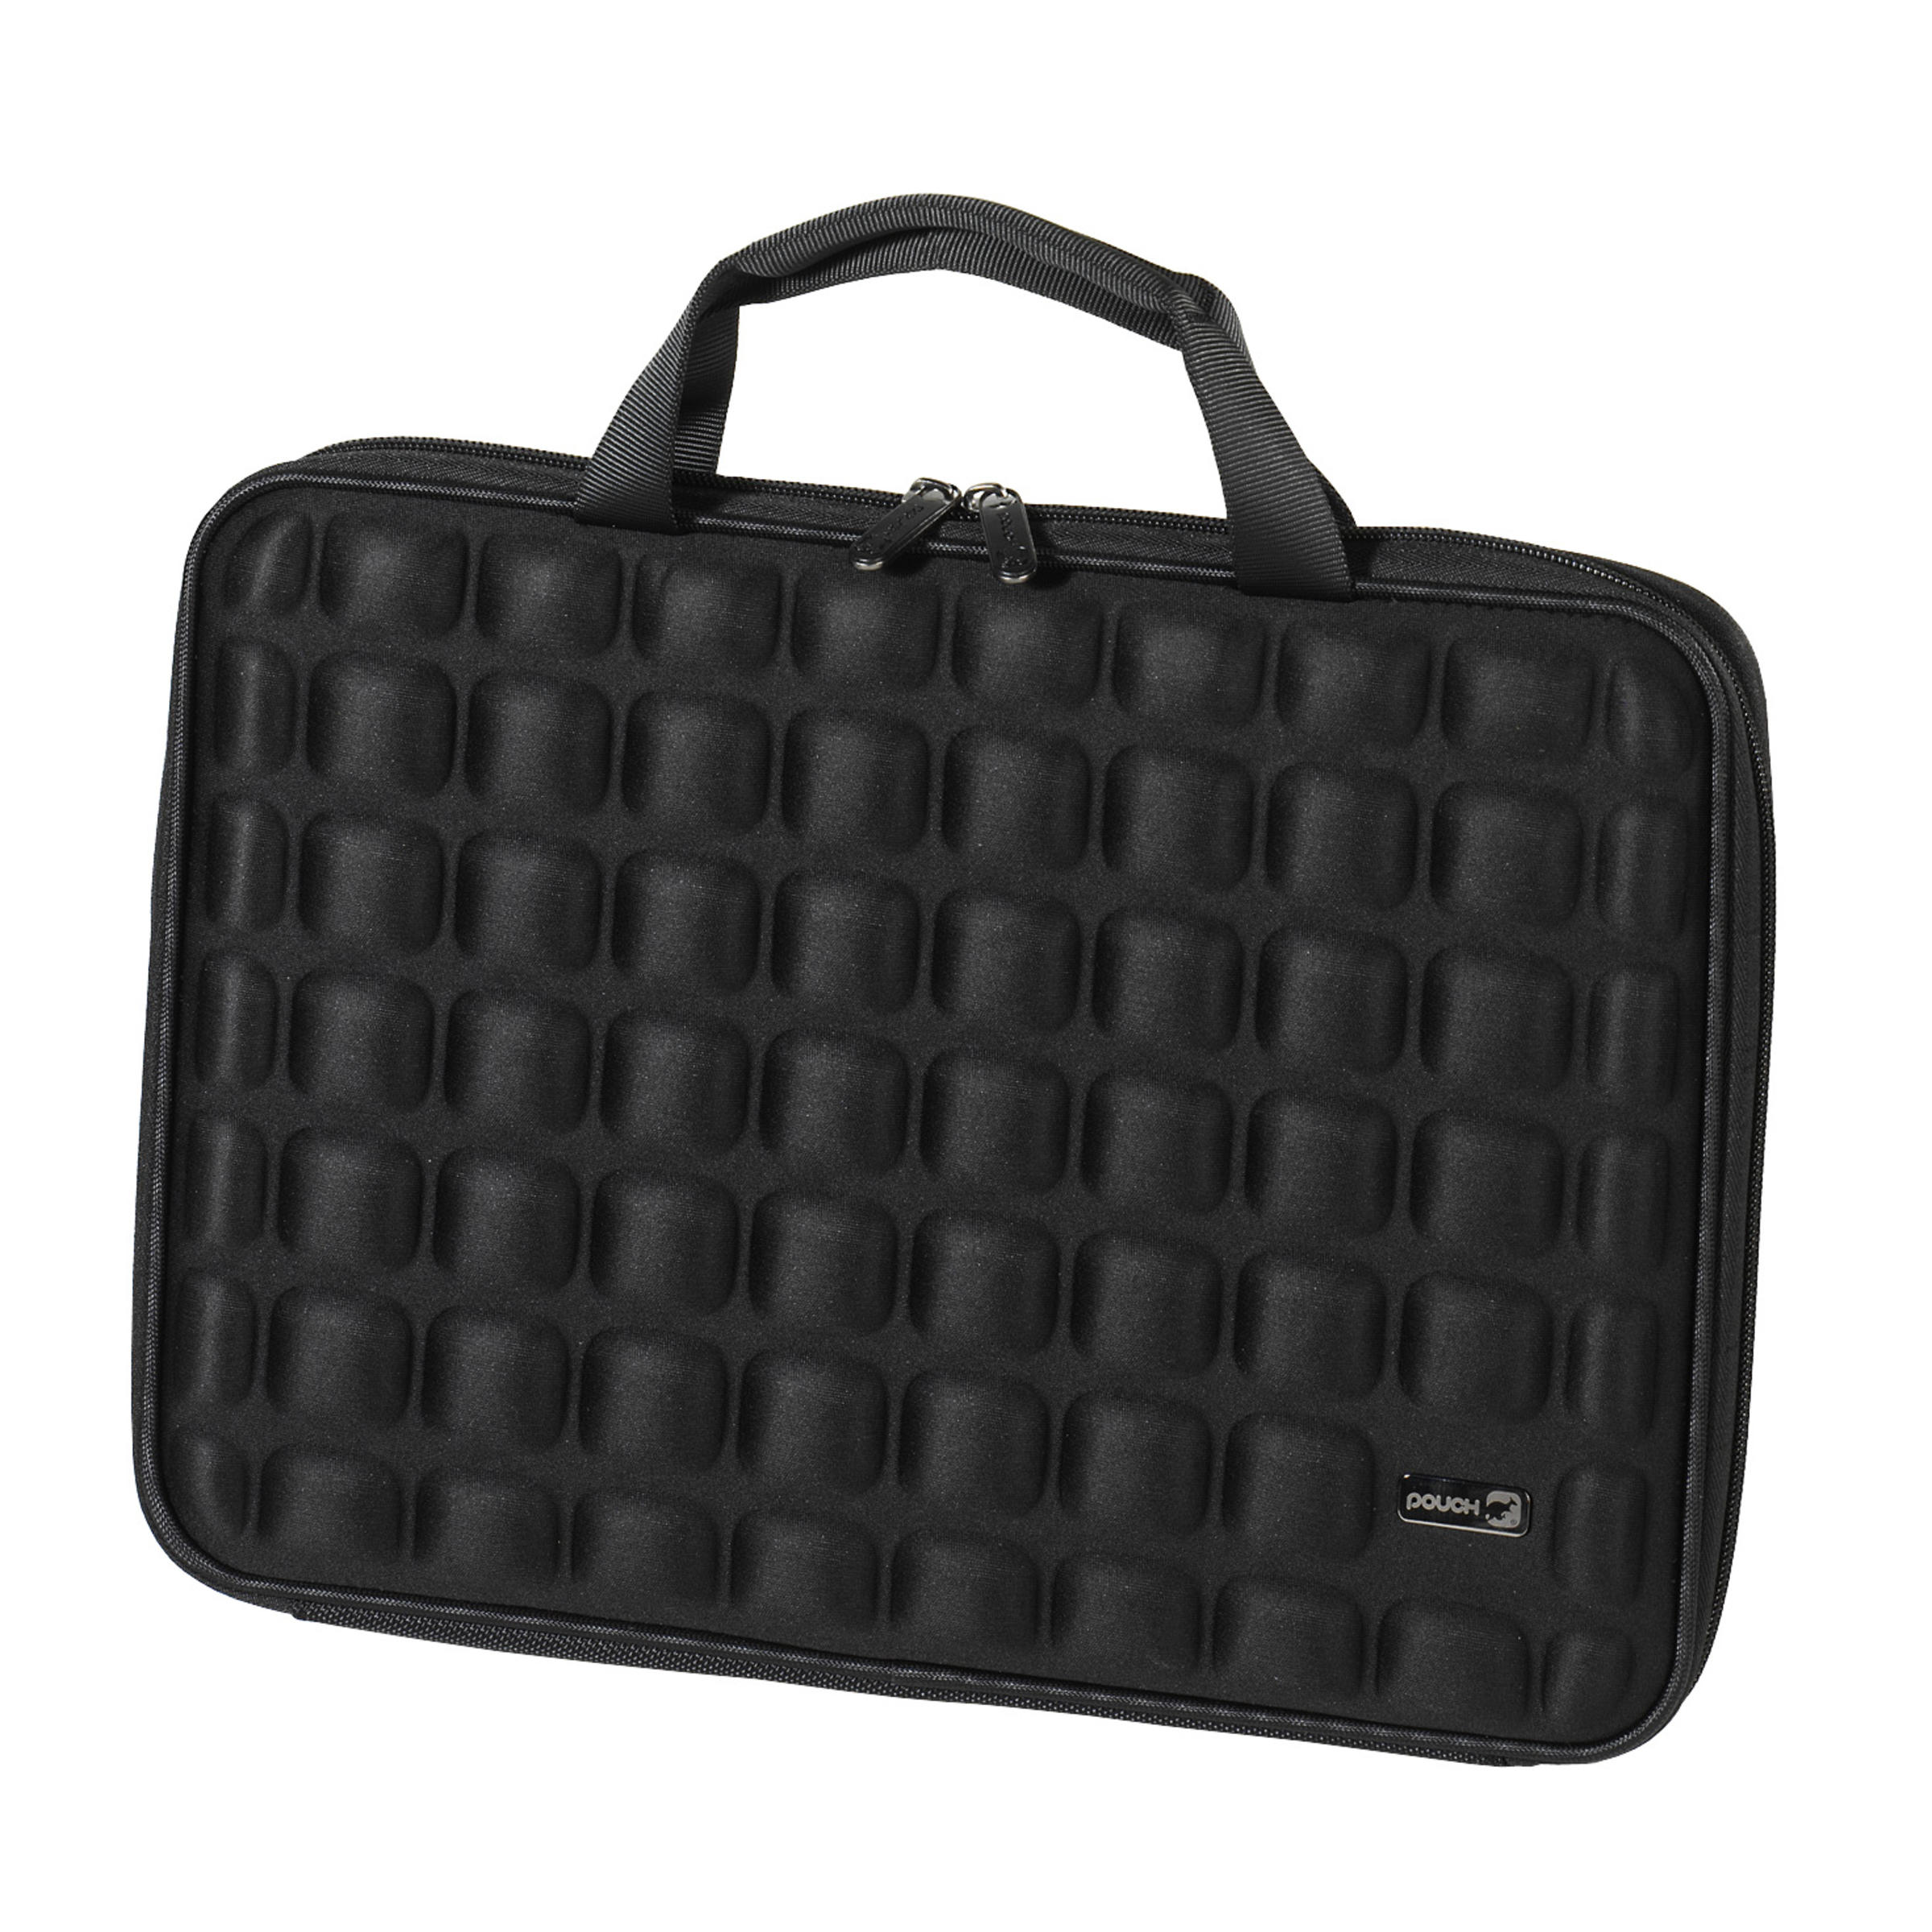 VIVANCO 32352 Notebooktasche Sleeve für Schaumstoff, Schwarz Universal EVA